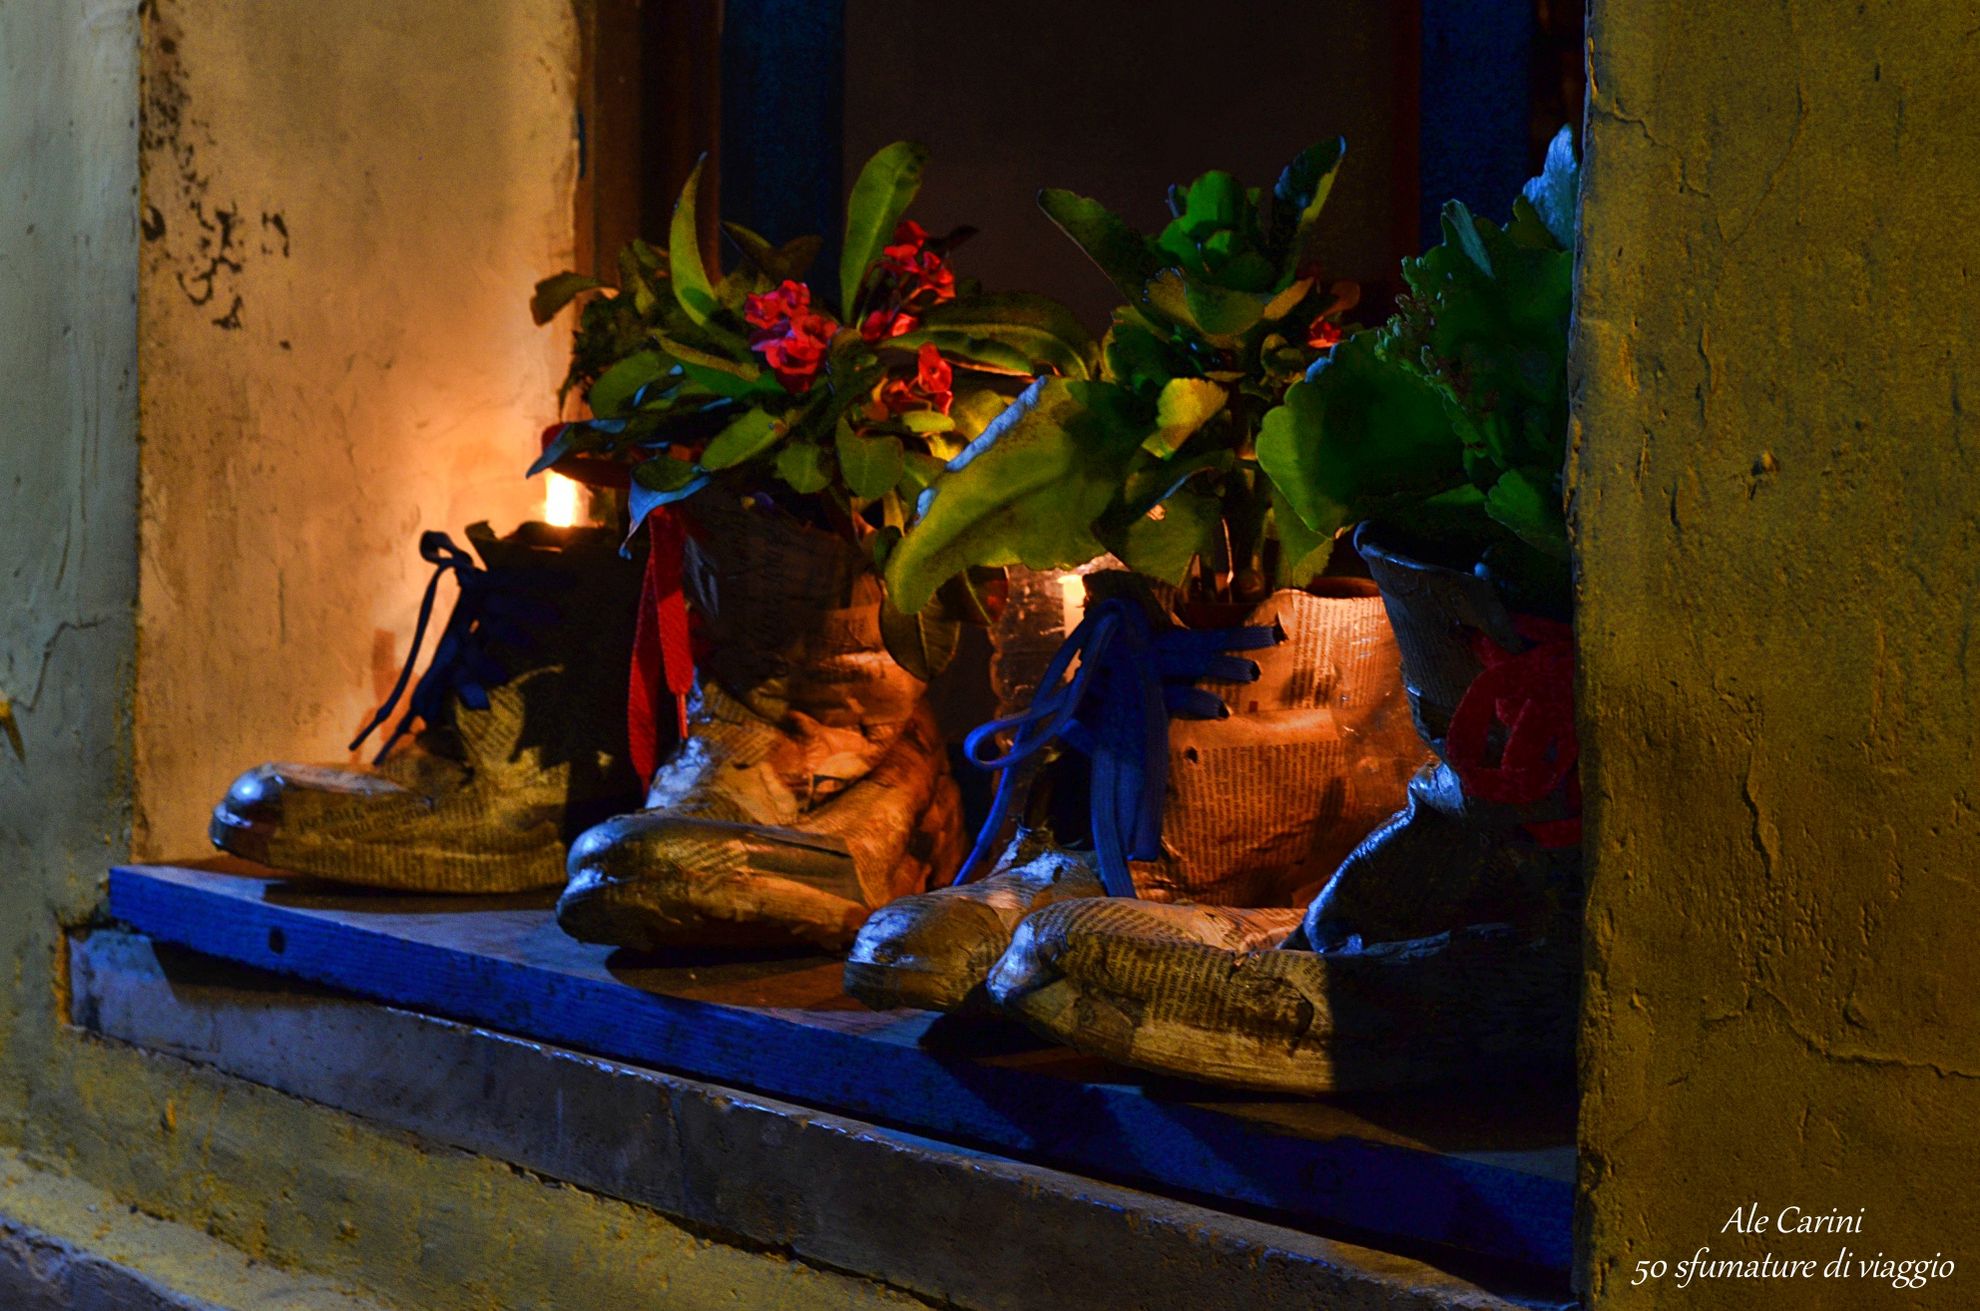 La Notte delle Candele a Vallerano - vallerano candele